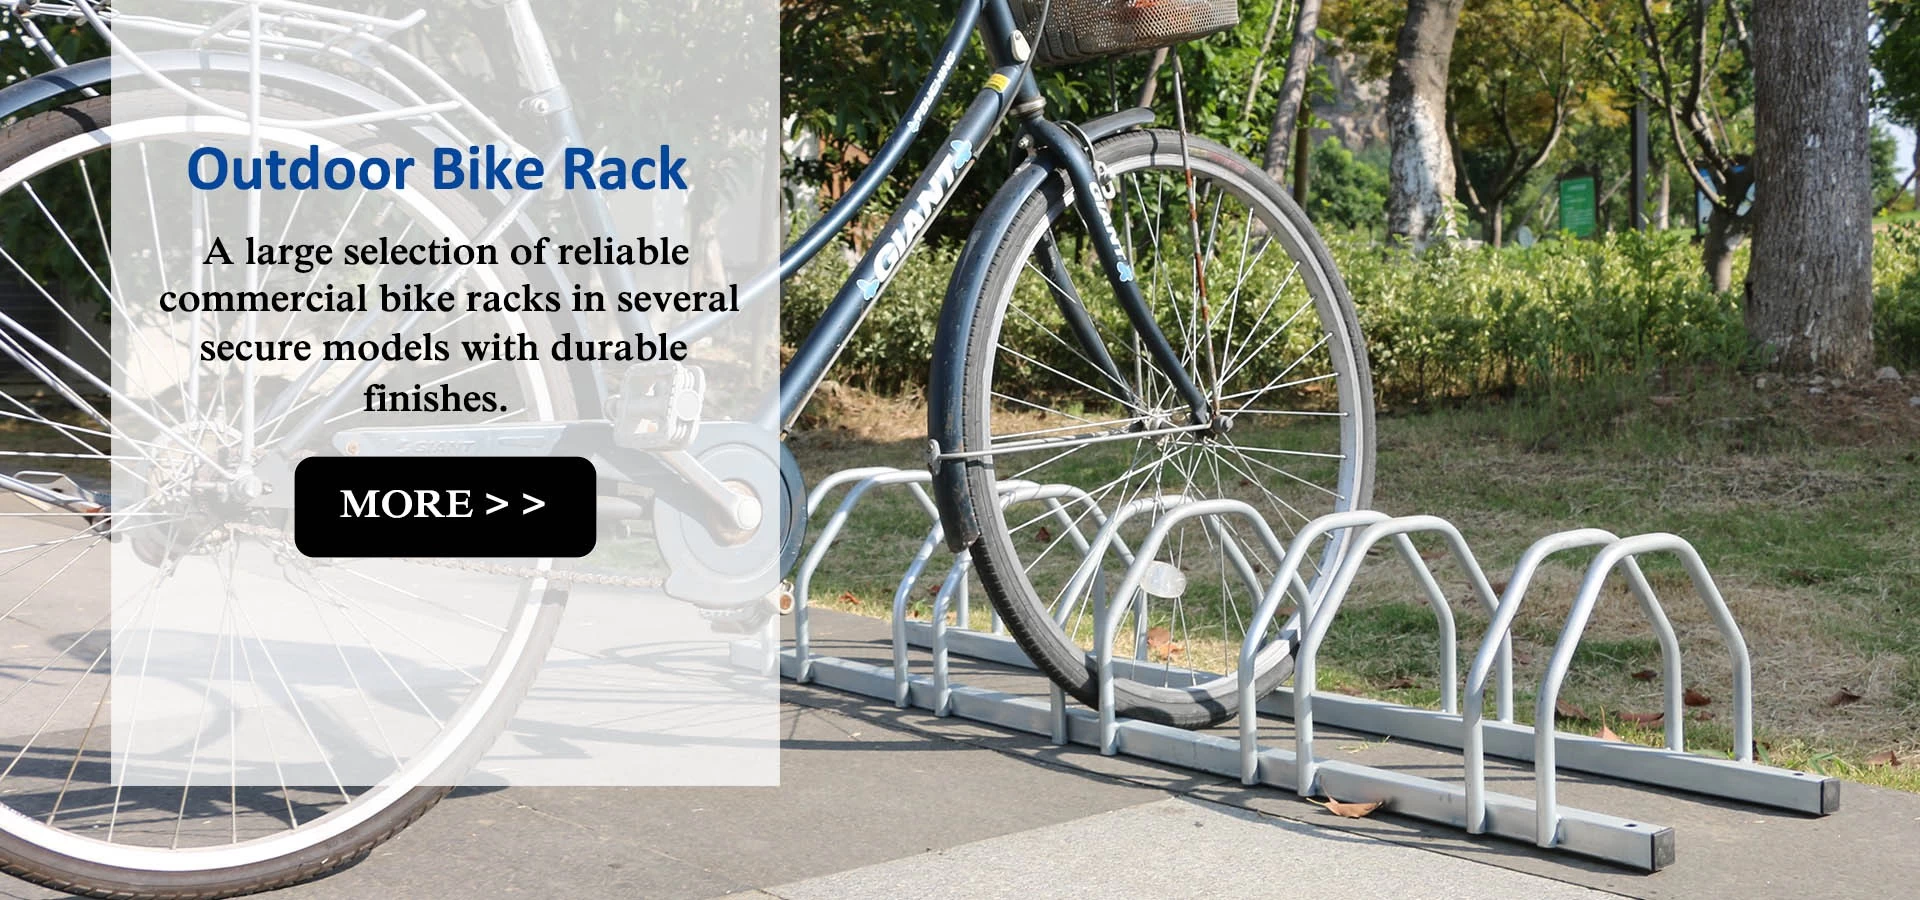 Outdoor Bike Racks, Bicycle Storage Racks